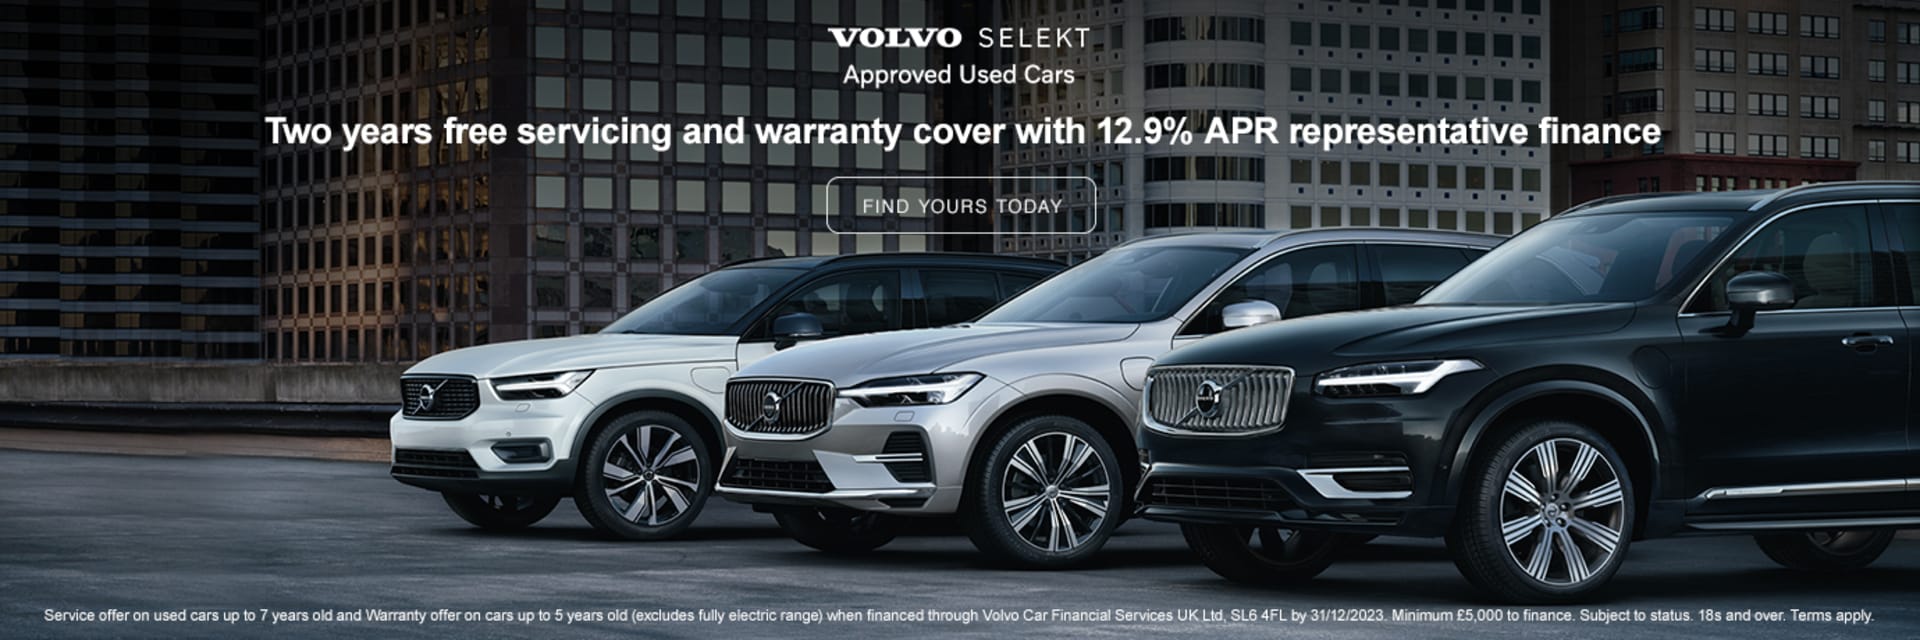 Volvo Selekt Offer